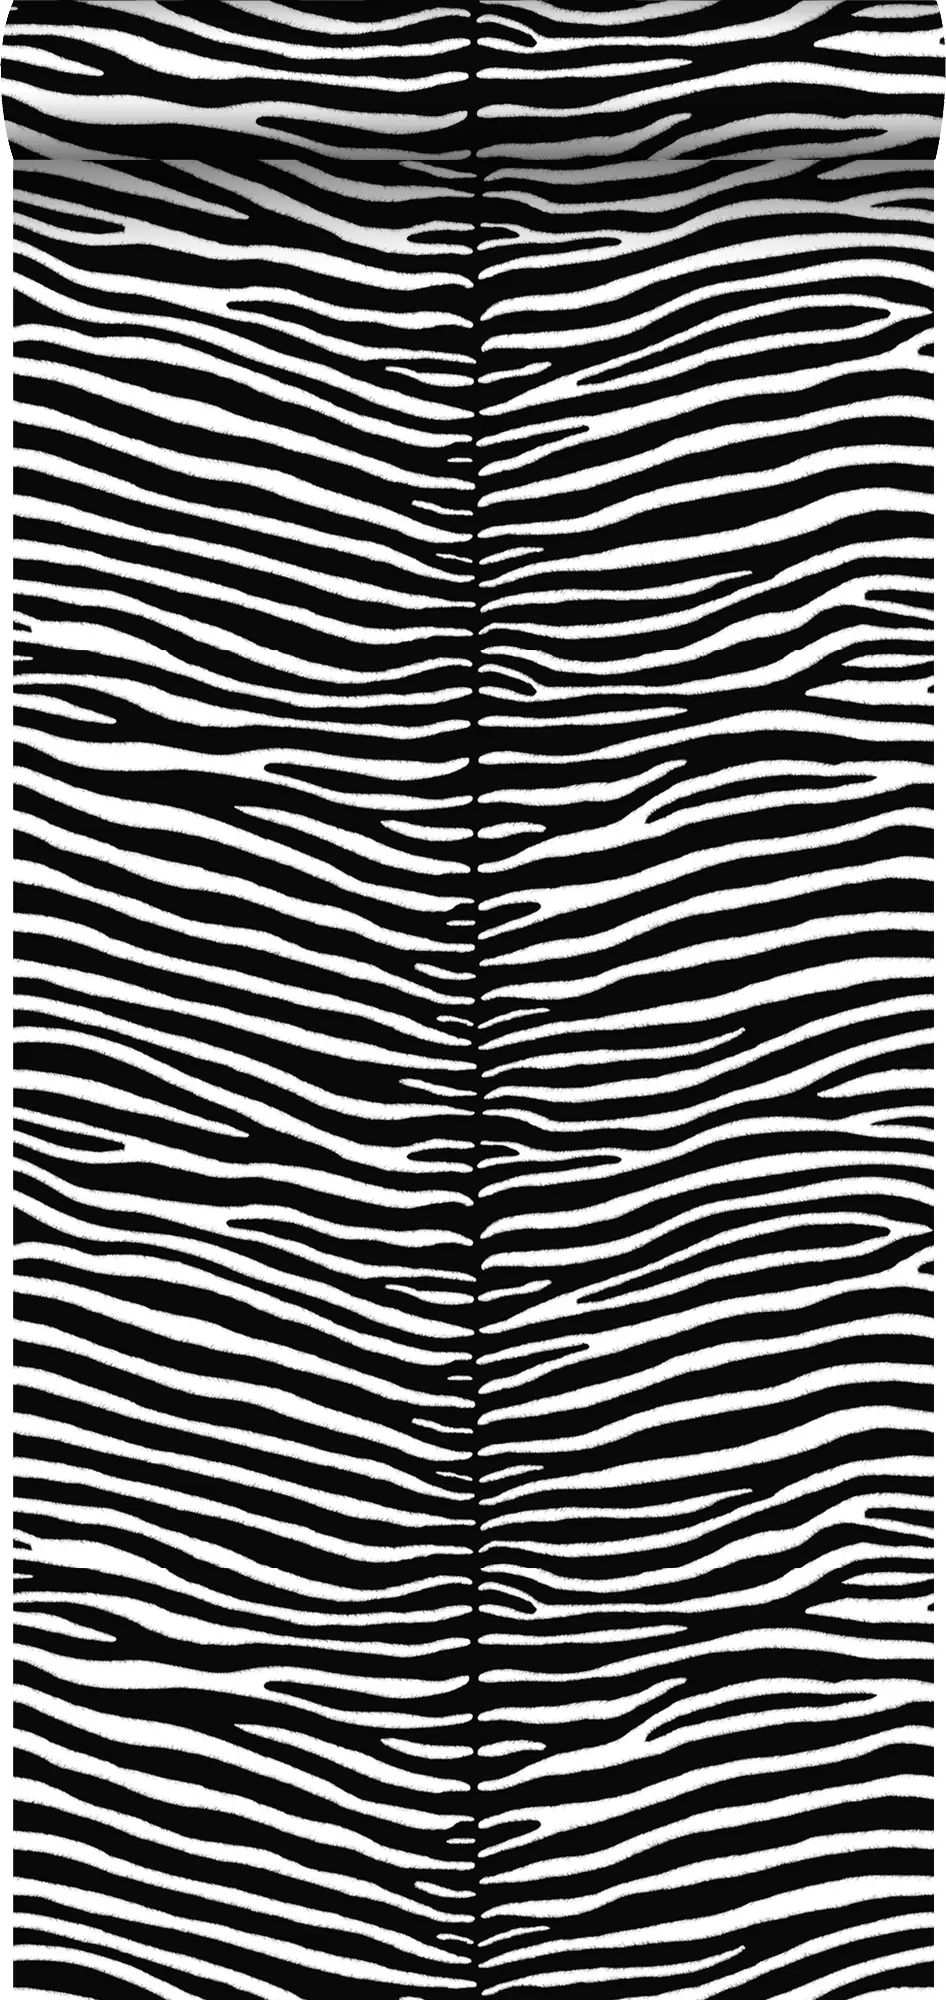 Zebras Tapete